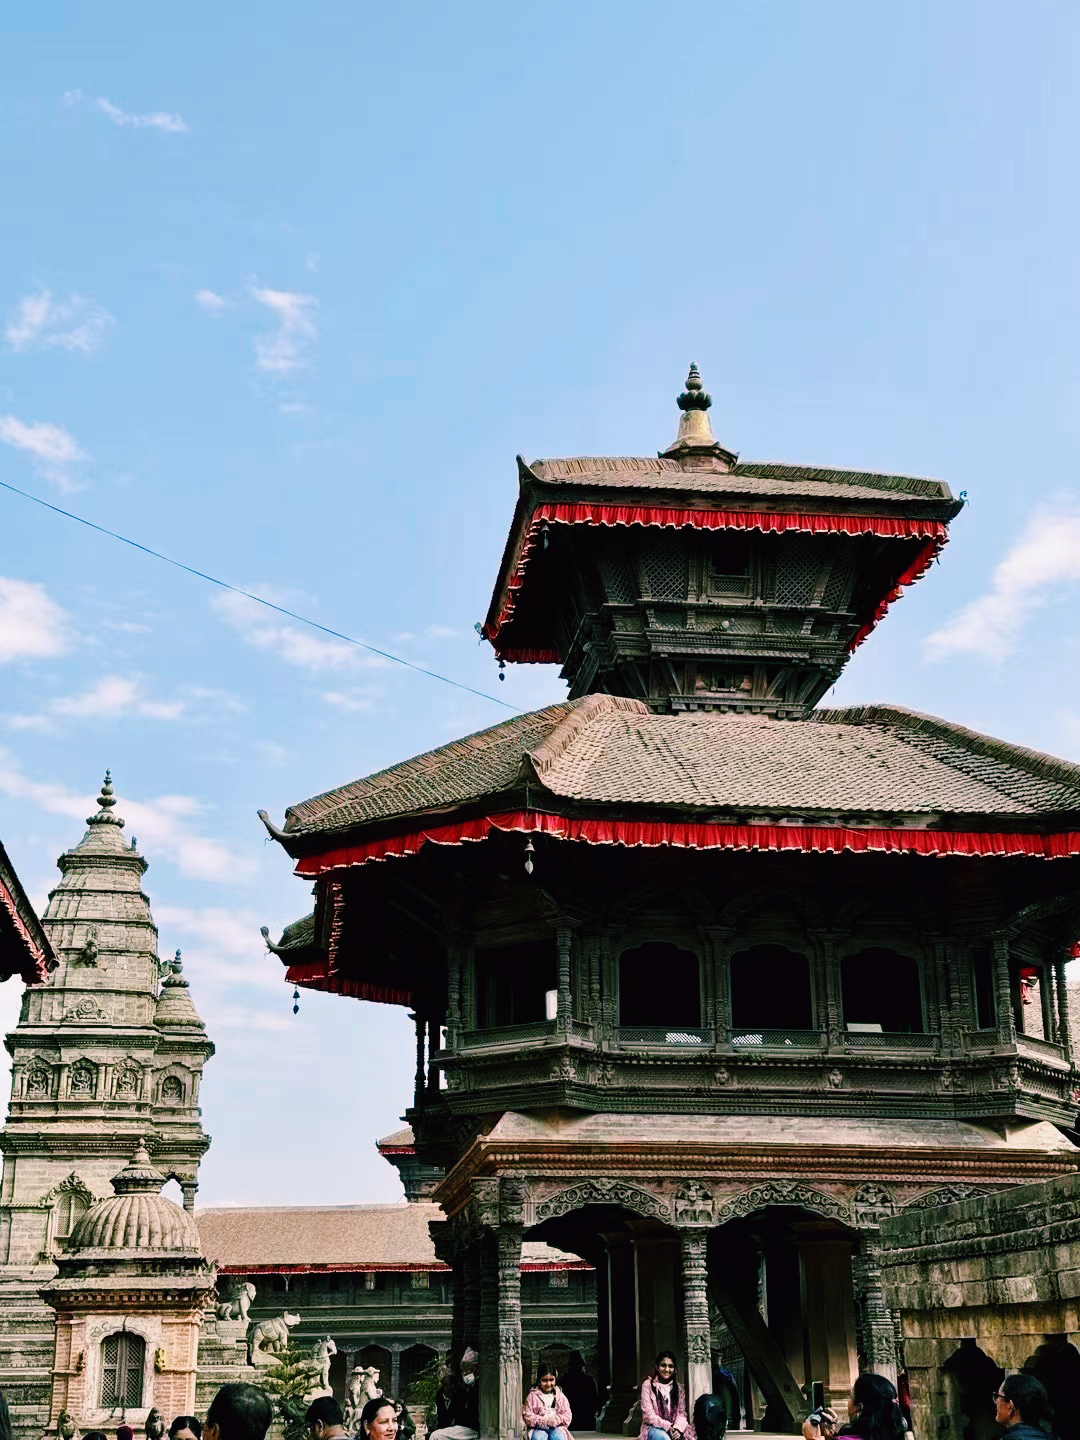 尼泊尔中华寺的雕刻和装饰🎍